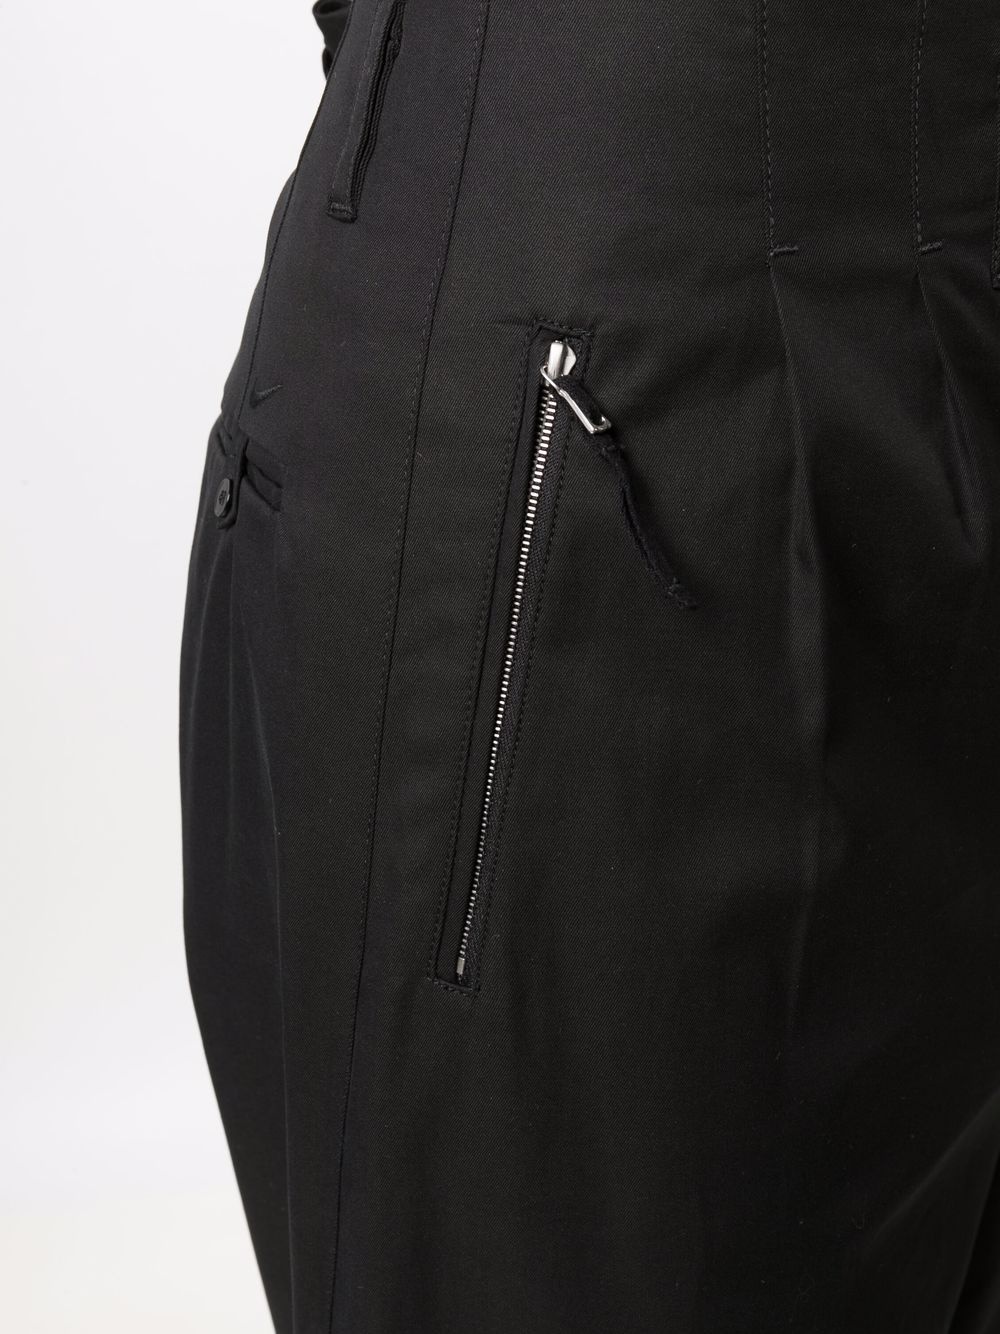 pleat-detail zip-pockets worker pants - 5